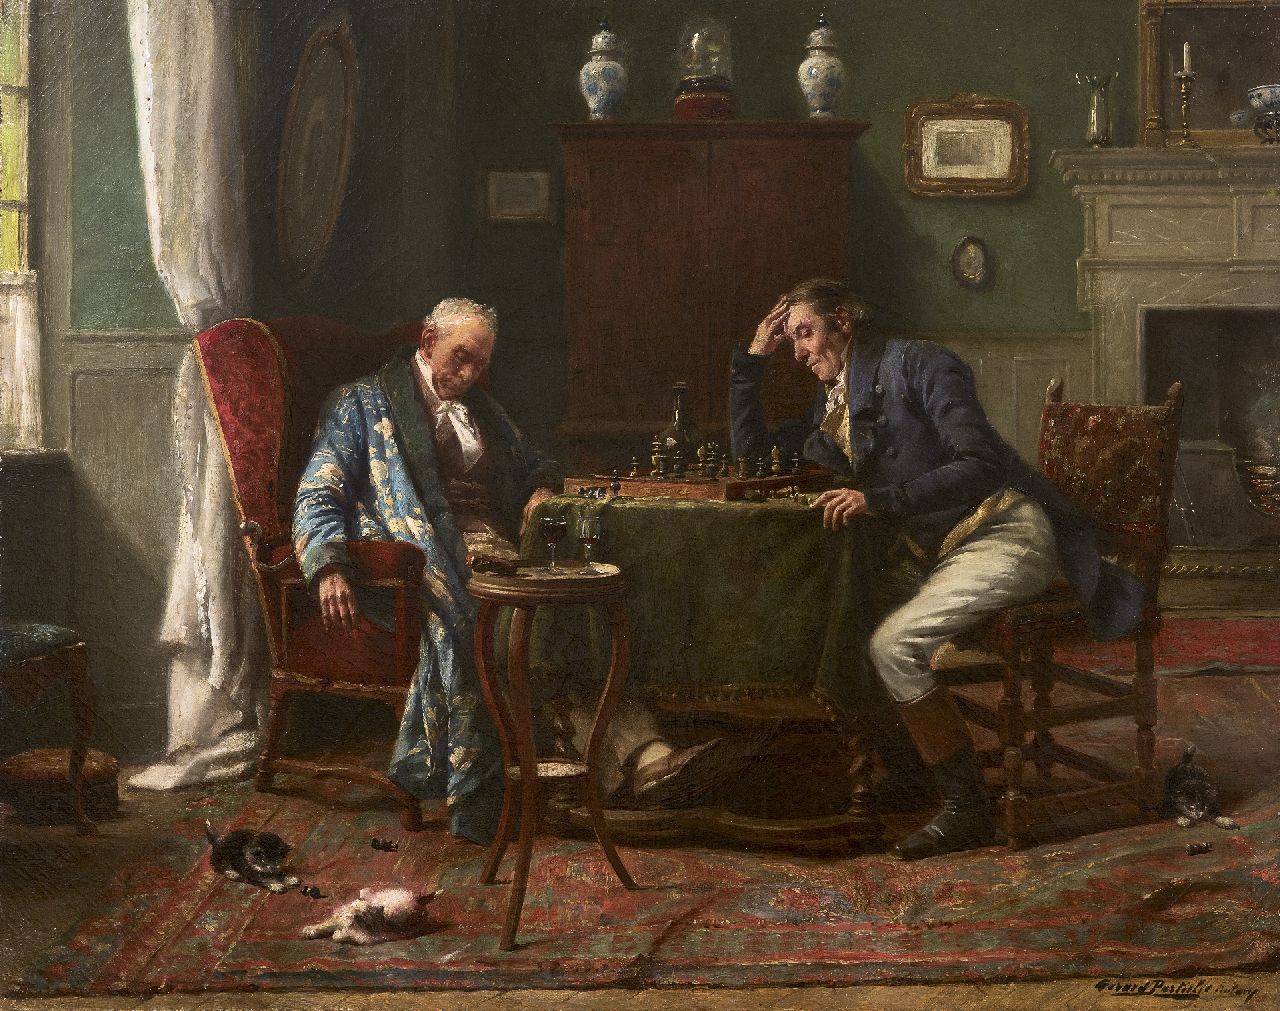 Portielje G.J.  | 'Gerard' Joseph Portielje | Schilderijen te koop aangeboden | Bij het schaakspel is het wakker blijven, olieverf op doek 46,7 x 58,5 cm, gesigneerd rechtsonder